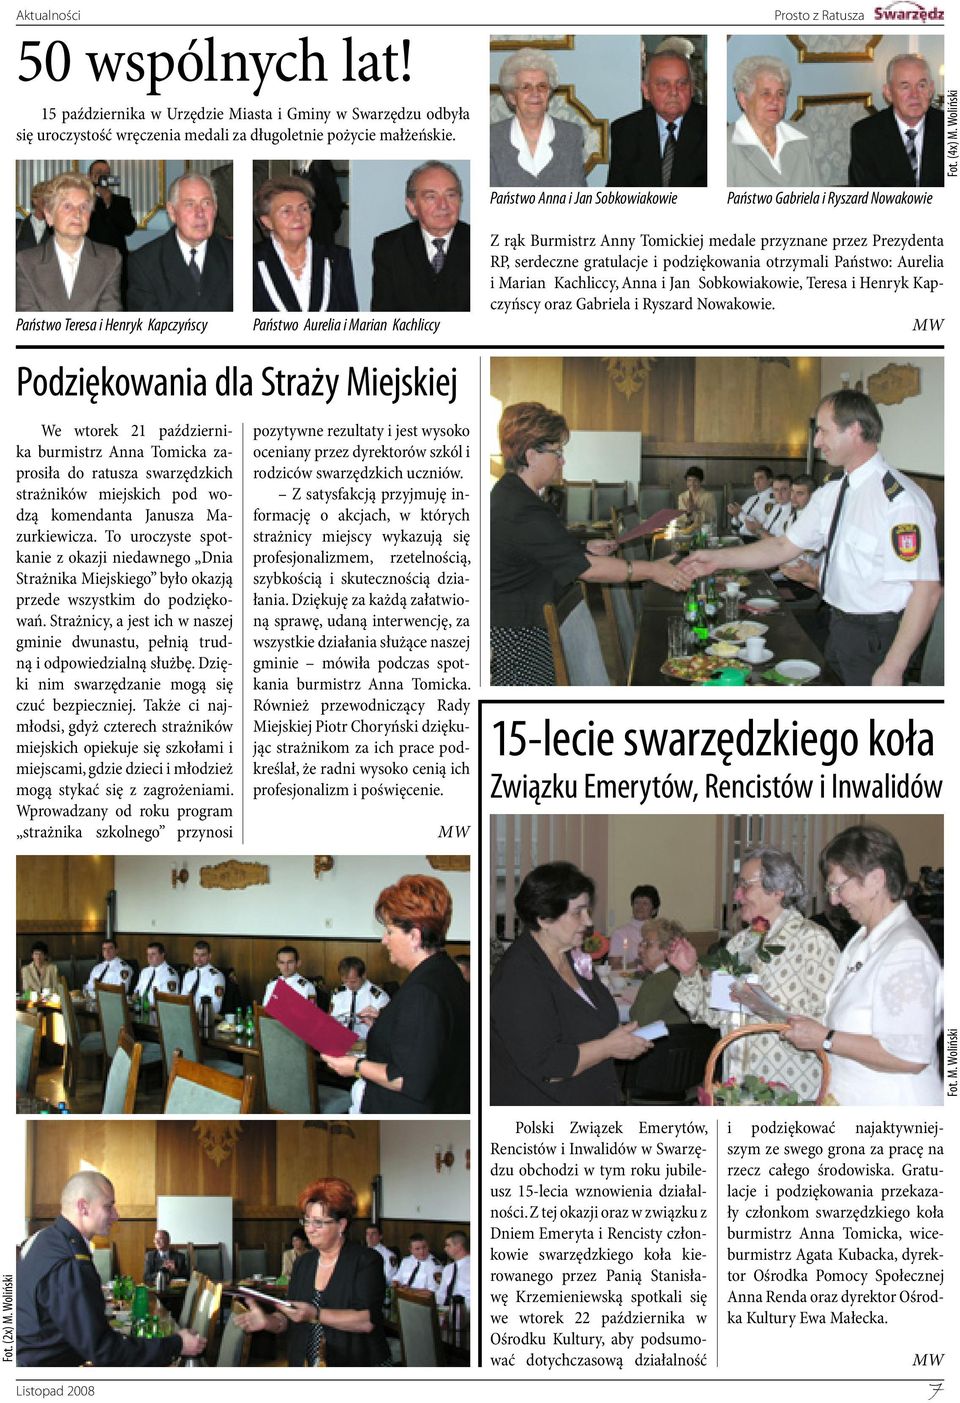 października burmistrz Anna Tomicka zaprosiła do ratusza swarzędzkich strażników miejskich pod wodzą komendanta Janusza Mazurkiewicza.